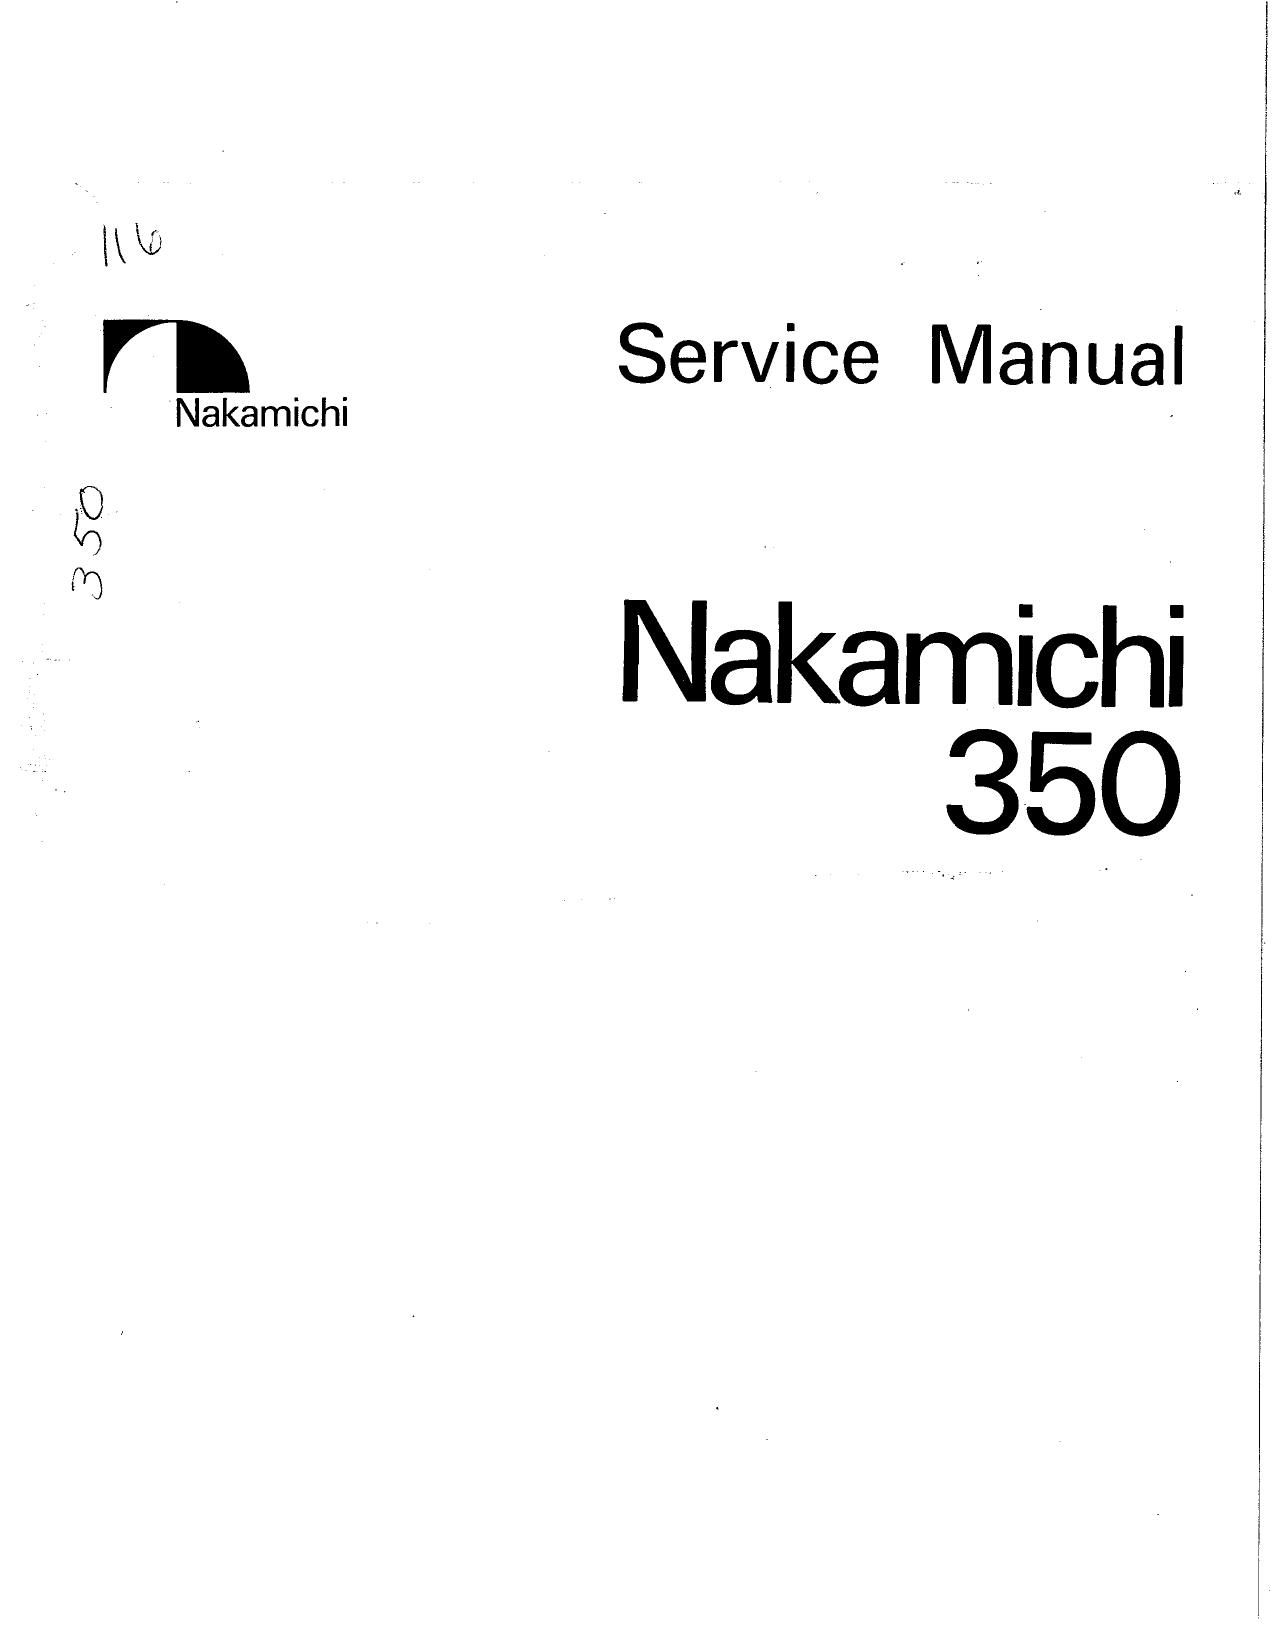 Nakamichi 350 Service Manual